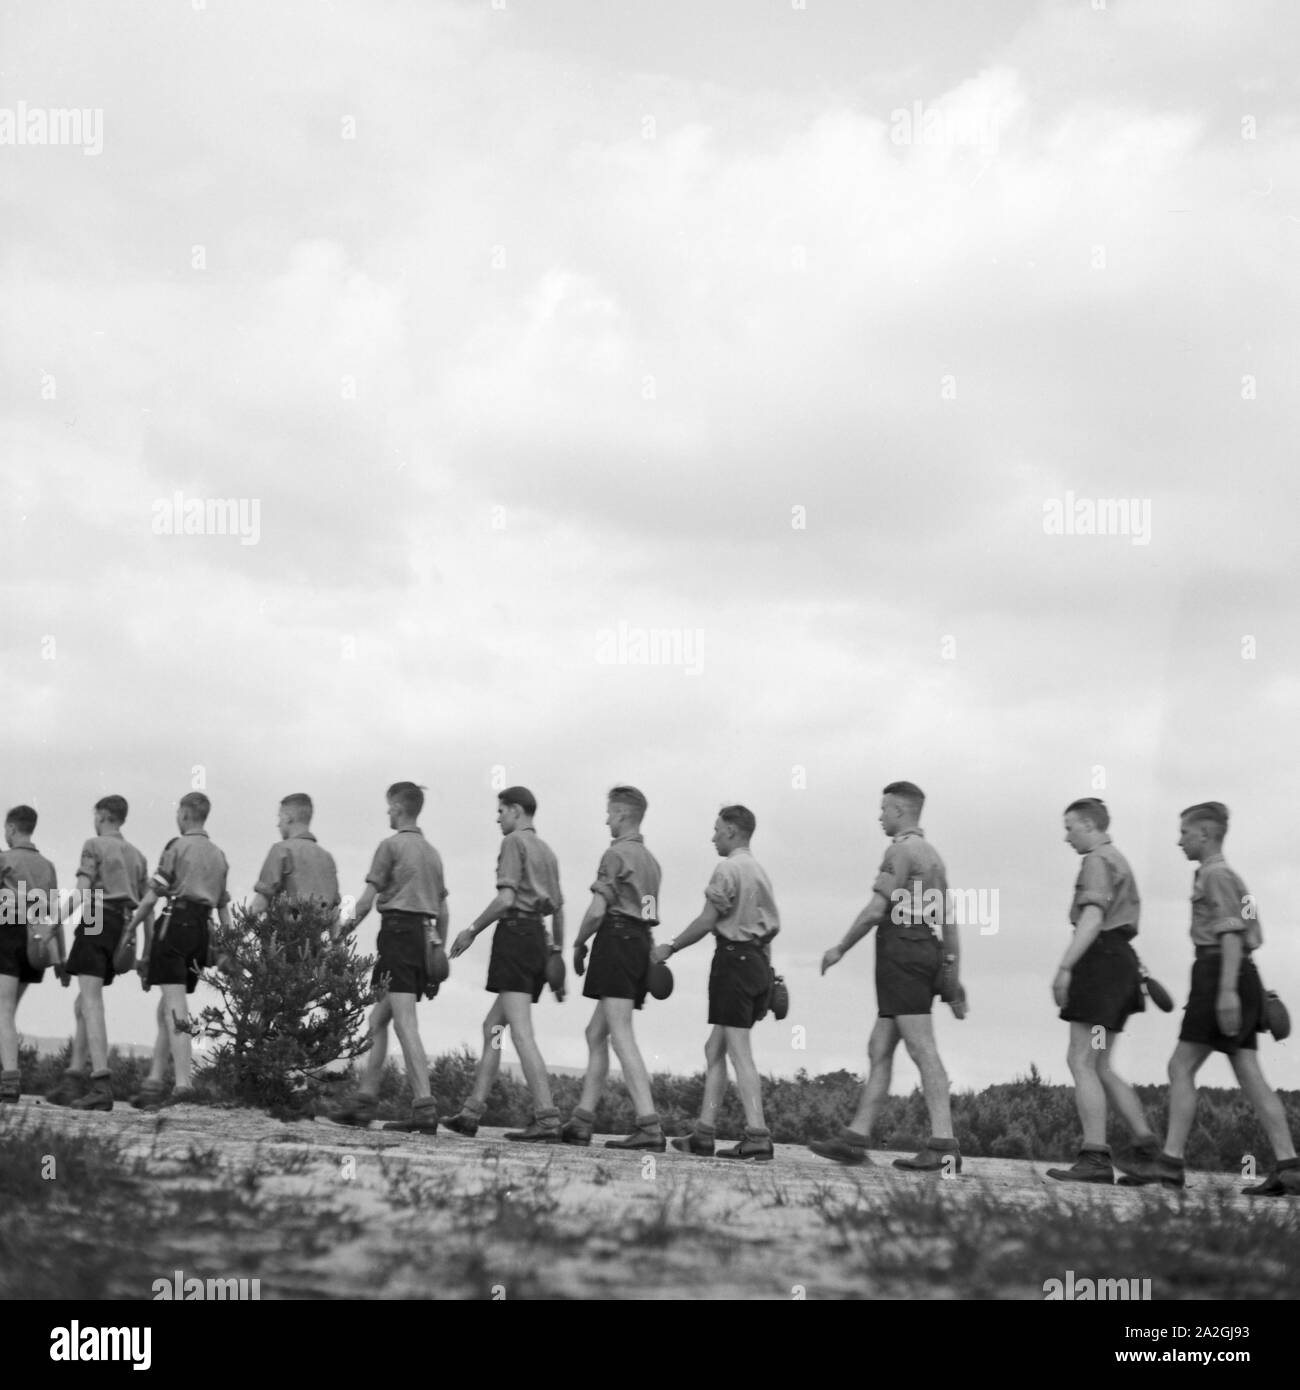 Hitlejugend marschiert in einer Reihe dans Westfalen, Deutschland 1930er Jahre. Jeunes Hitler marcher une ligne dans Westfalia, Allemagne 1930. Banque D'Images